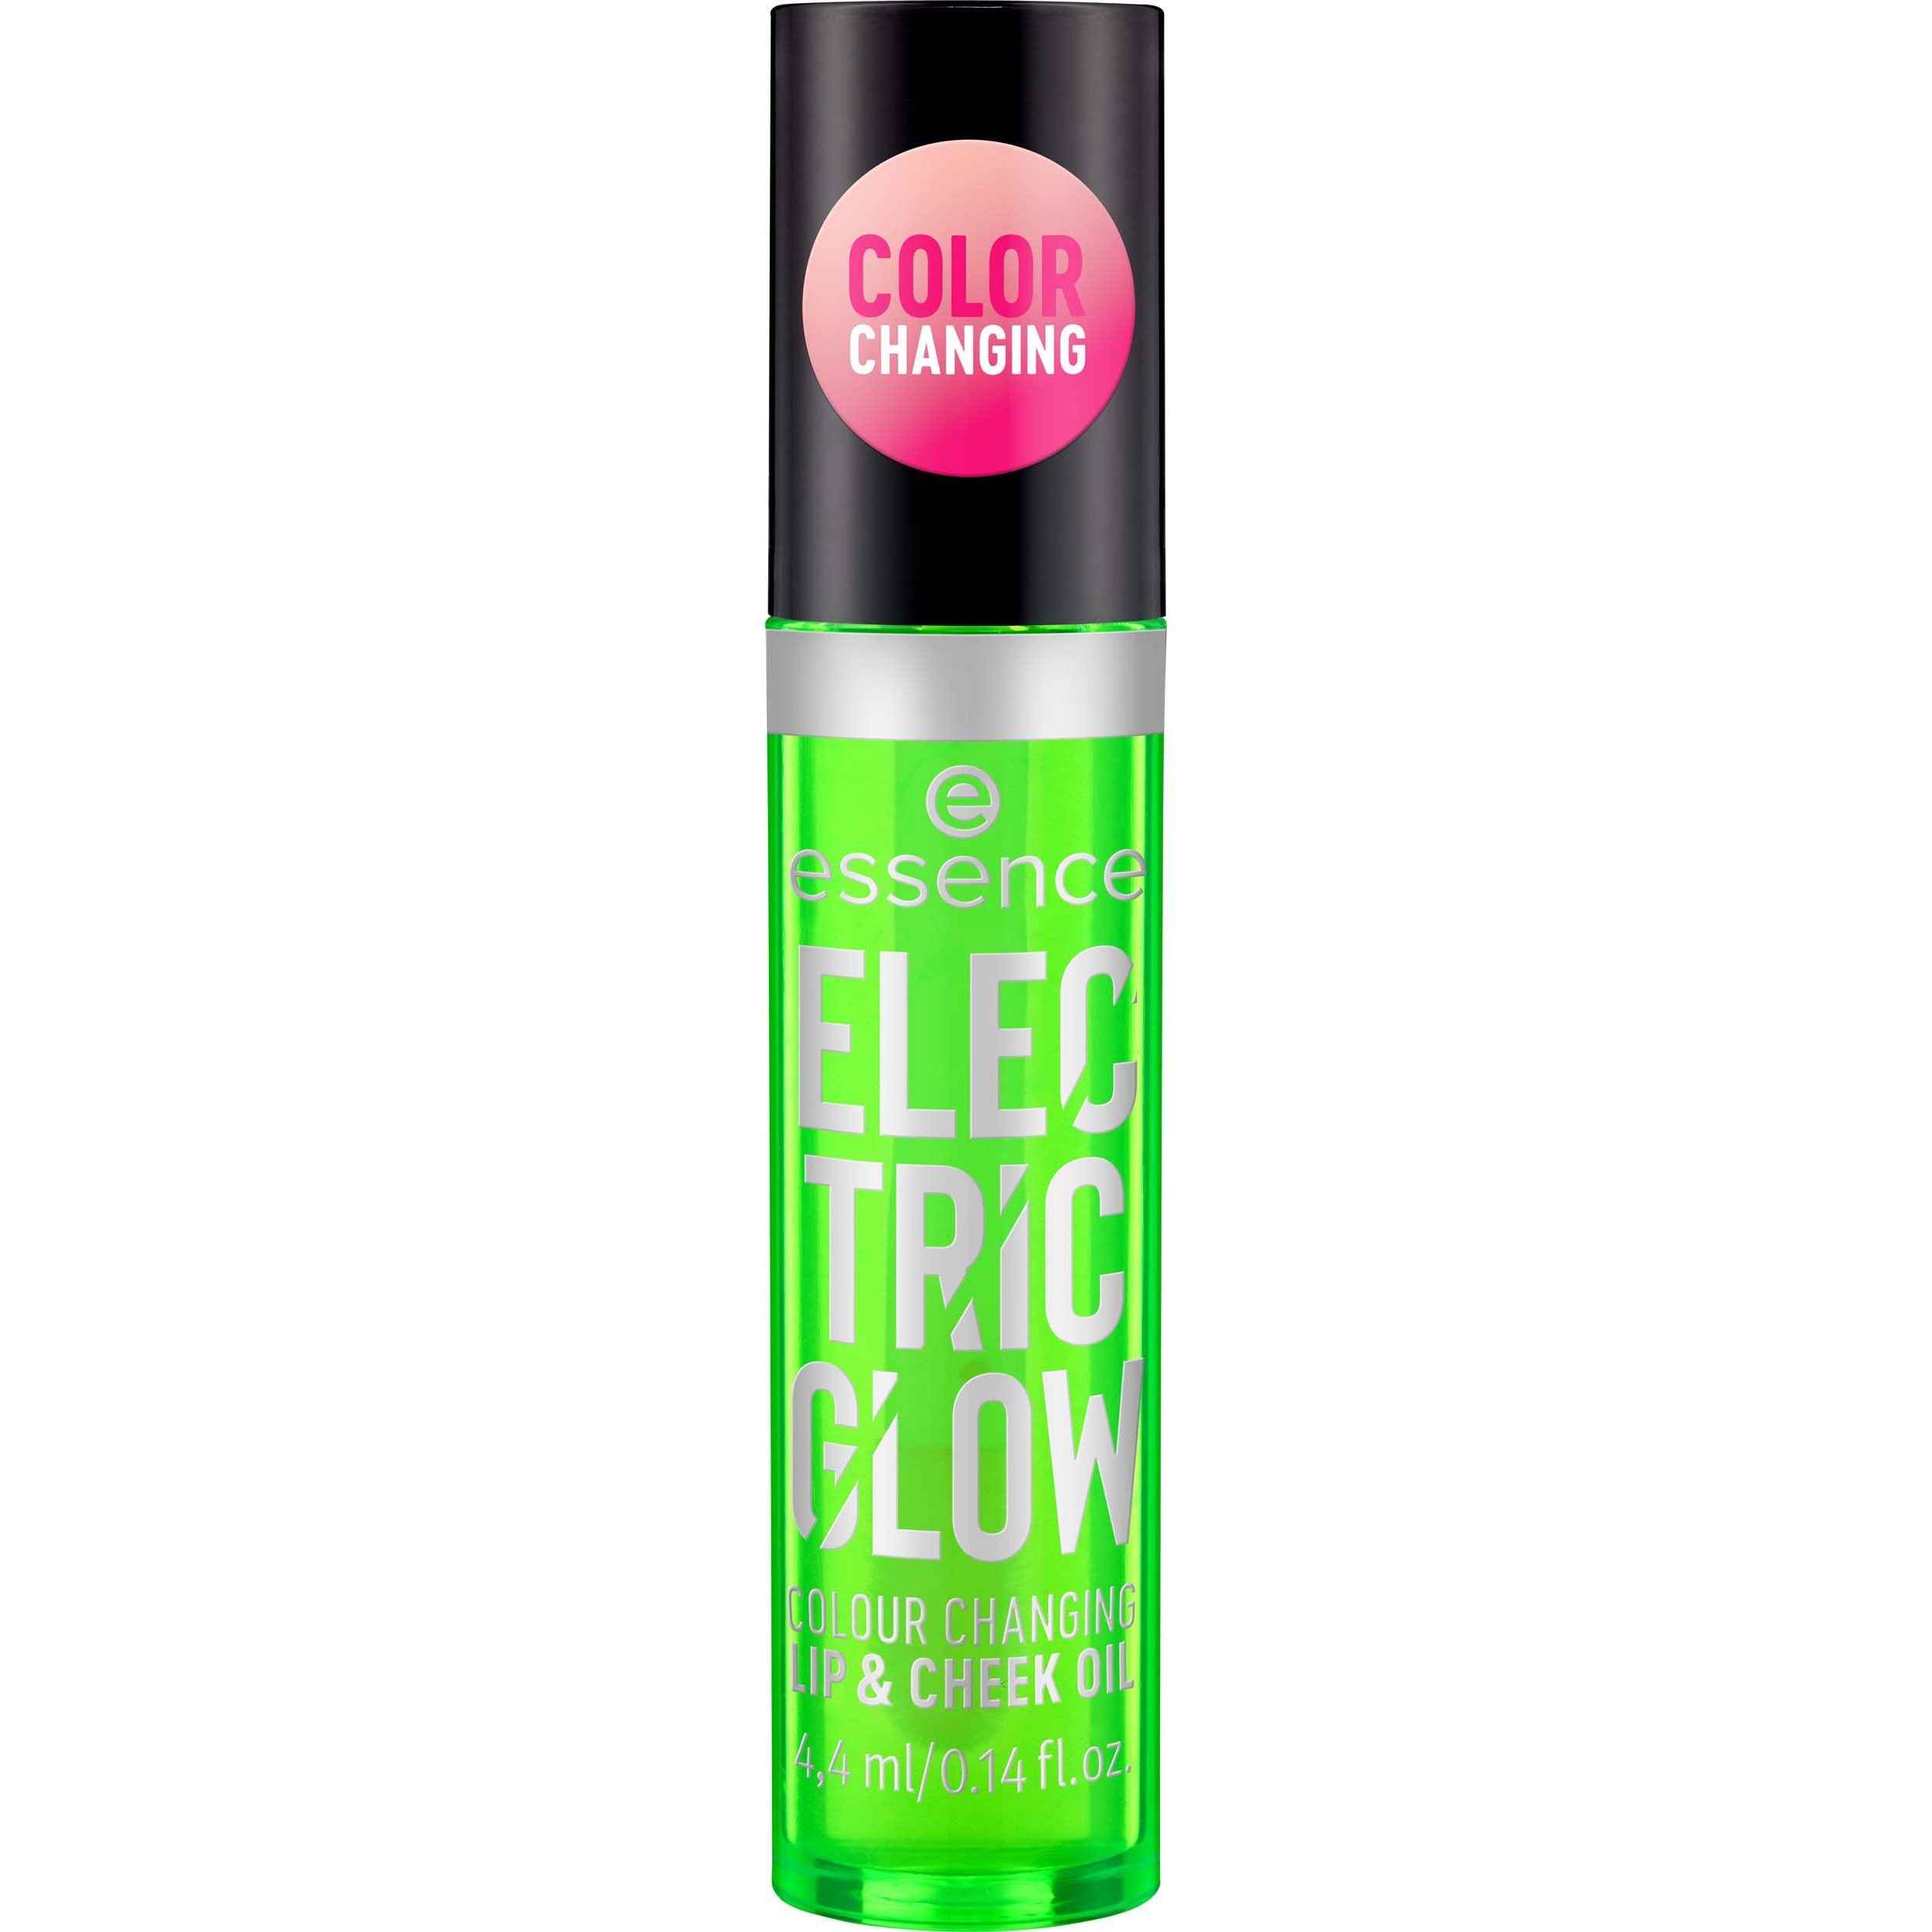 Zdjęcia - Szminka i błyszczyk do ust Essence Electric Glow Colour Changing Lip & Cheek Oil - olejek zm 